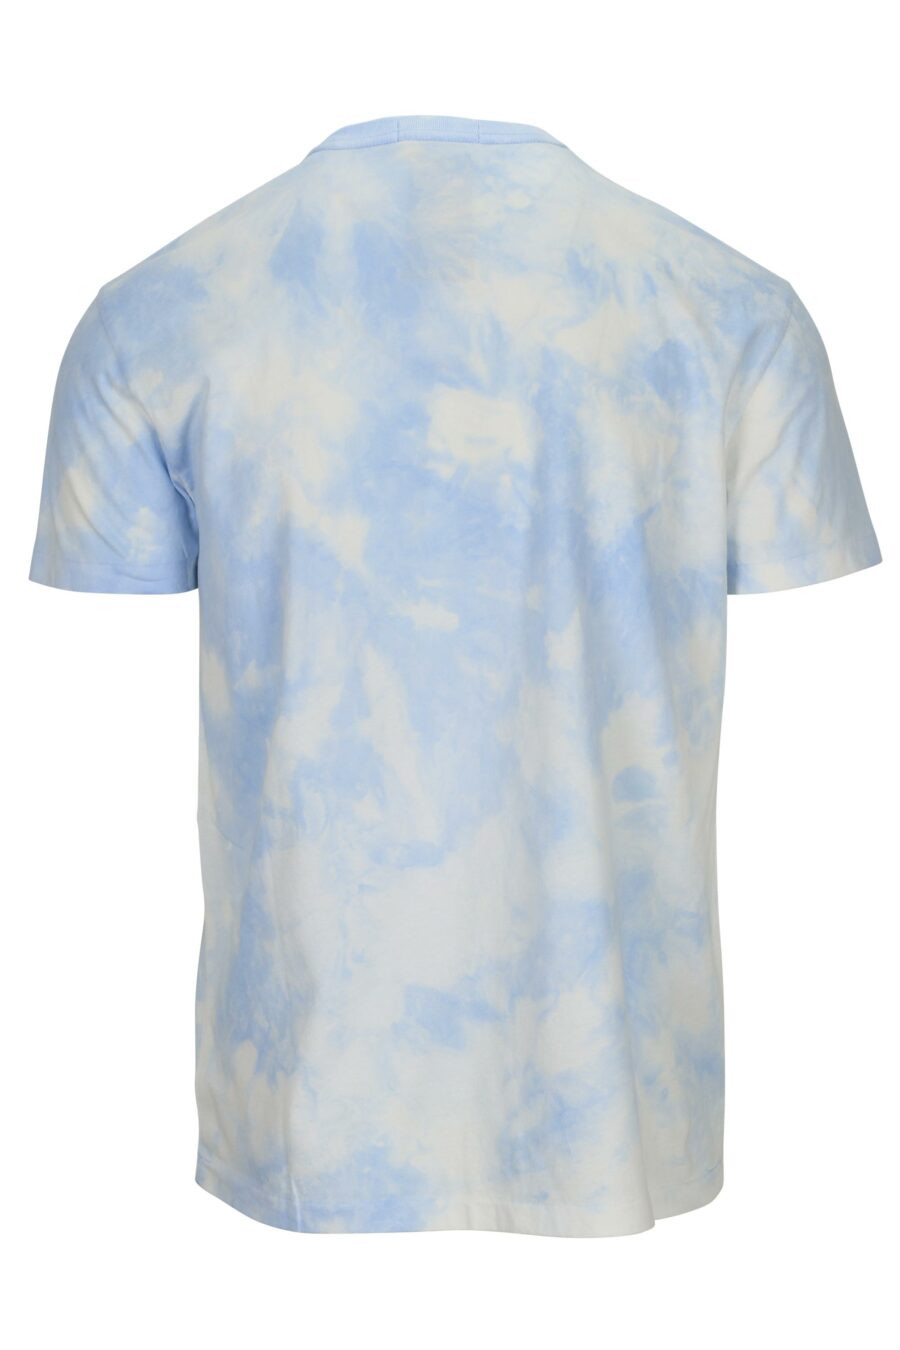 Blaues T-Shirt mit Strandpolobär-Logo - 3616536307666 1